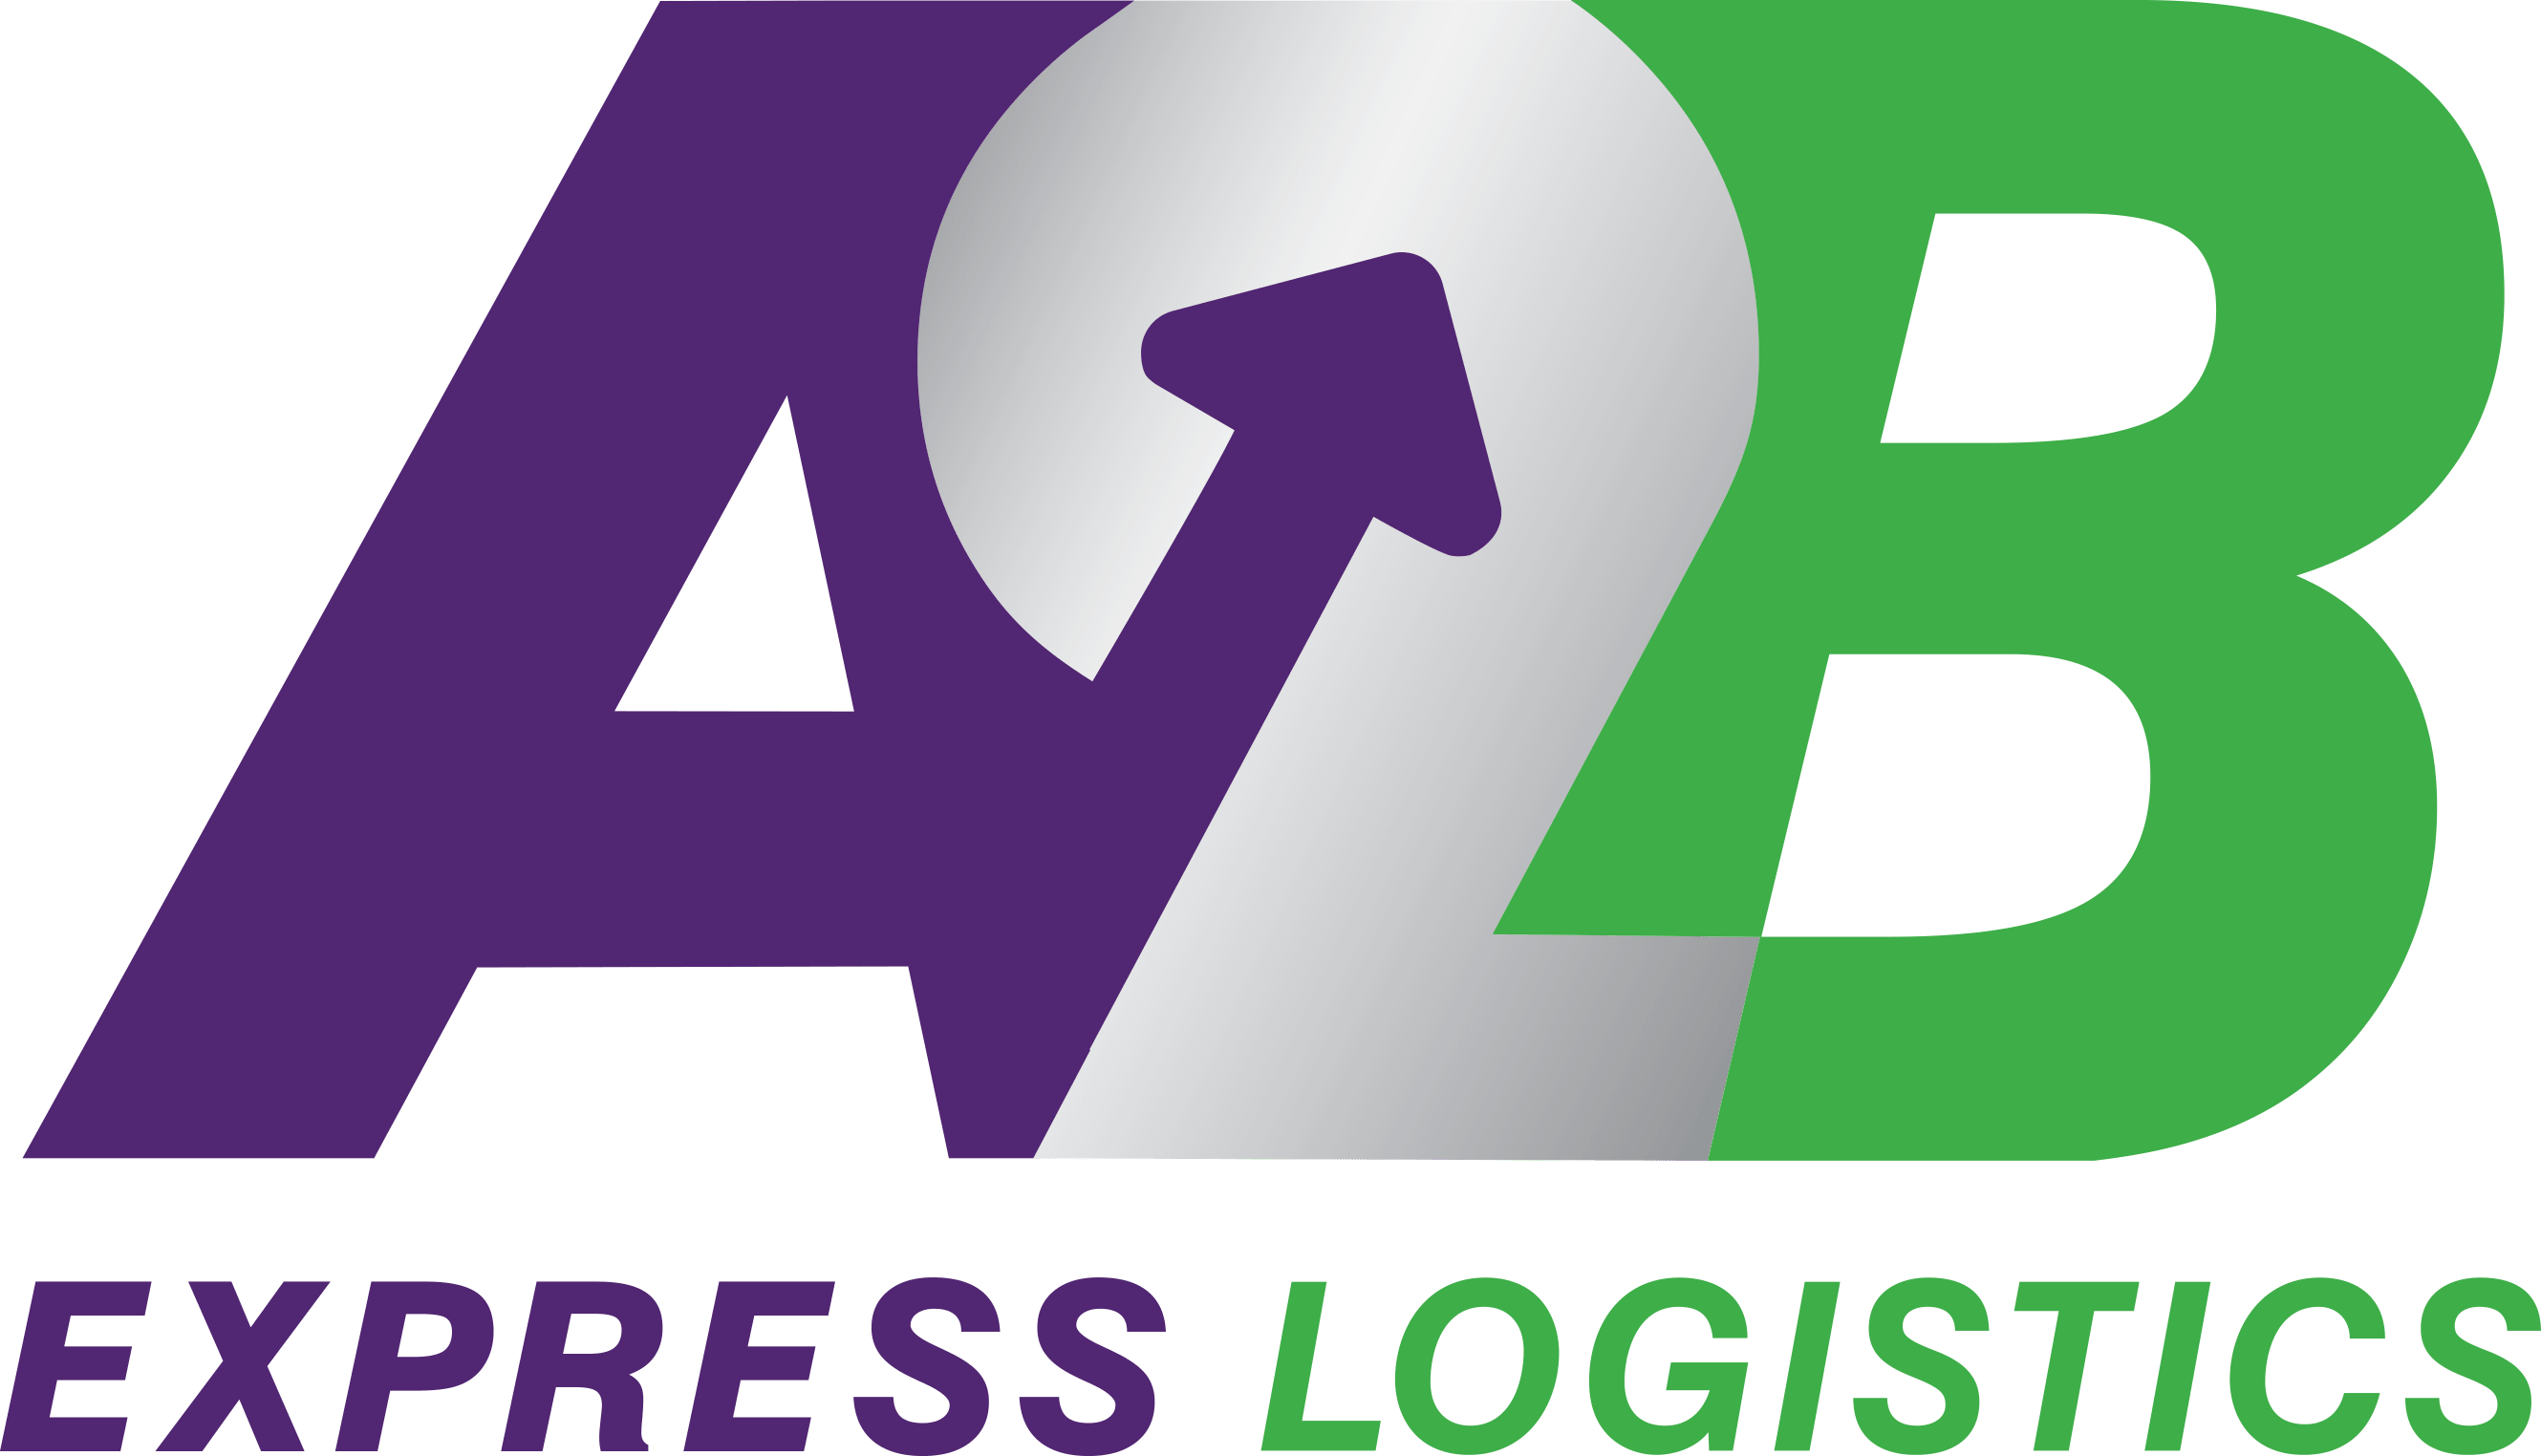 A2B Express Logistika